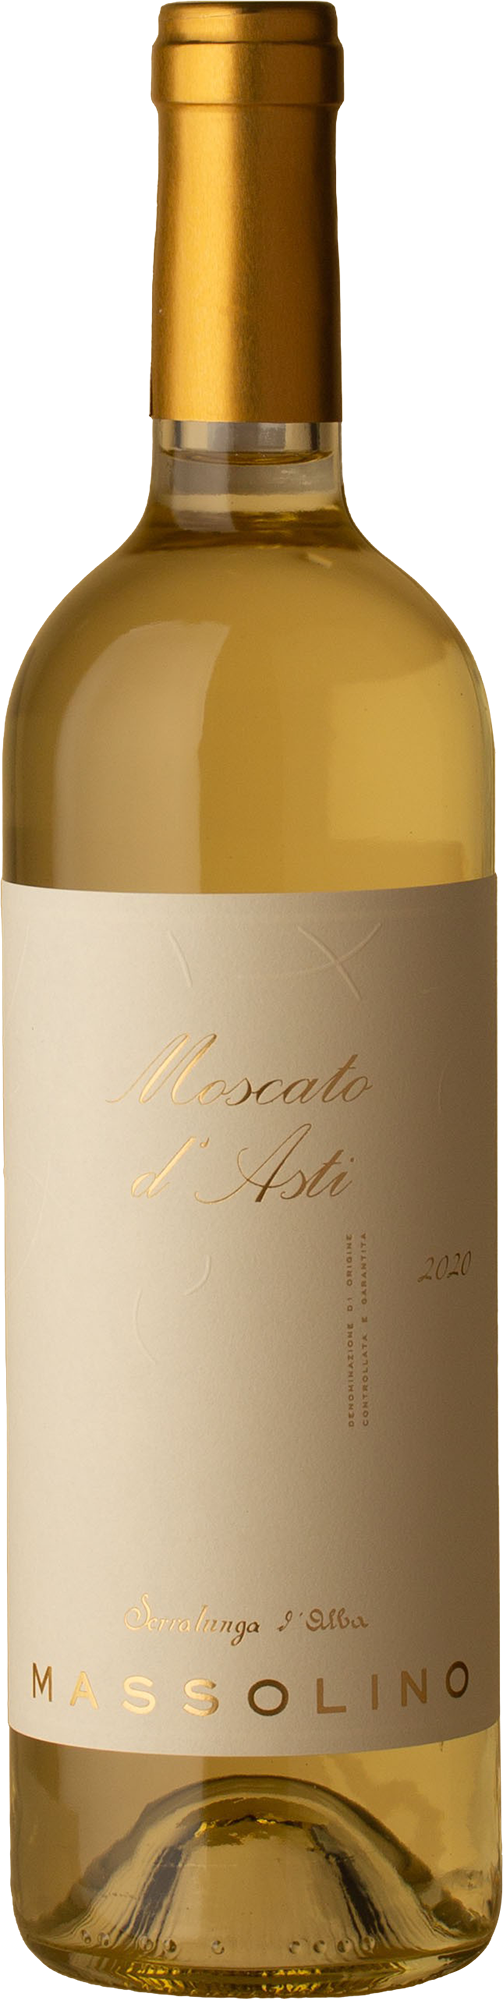 Massolino - Moscato d'Asti Moscato 2020 White Wine